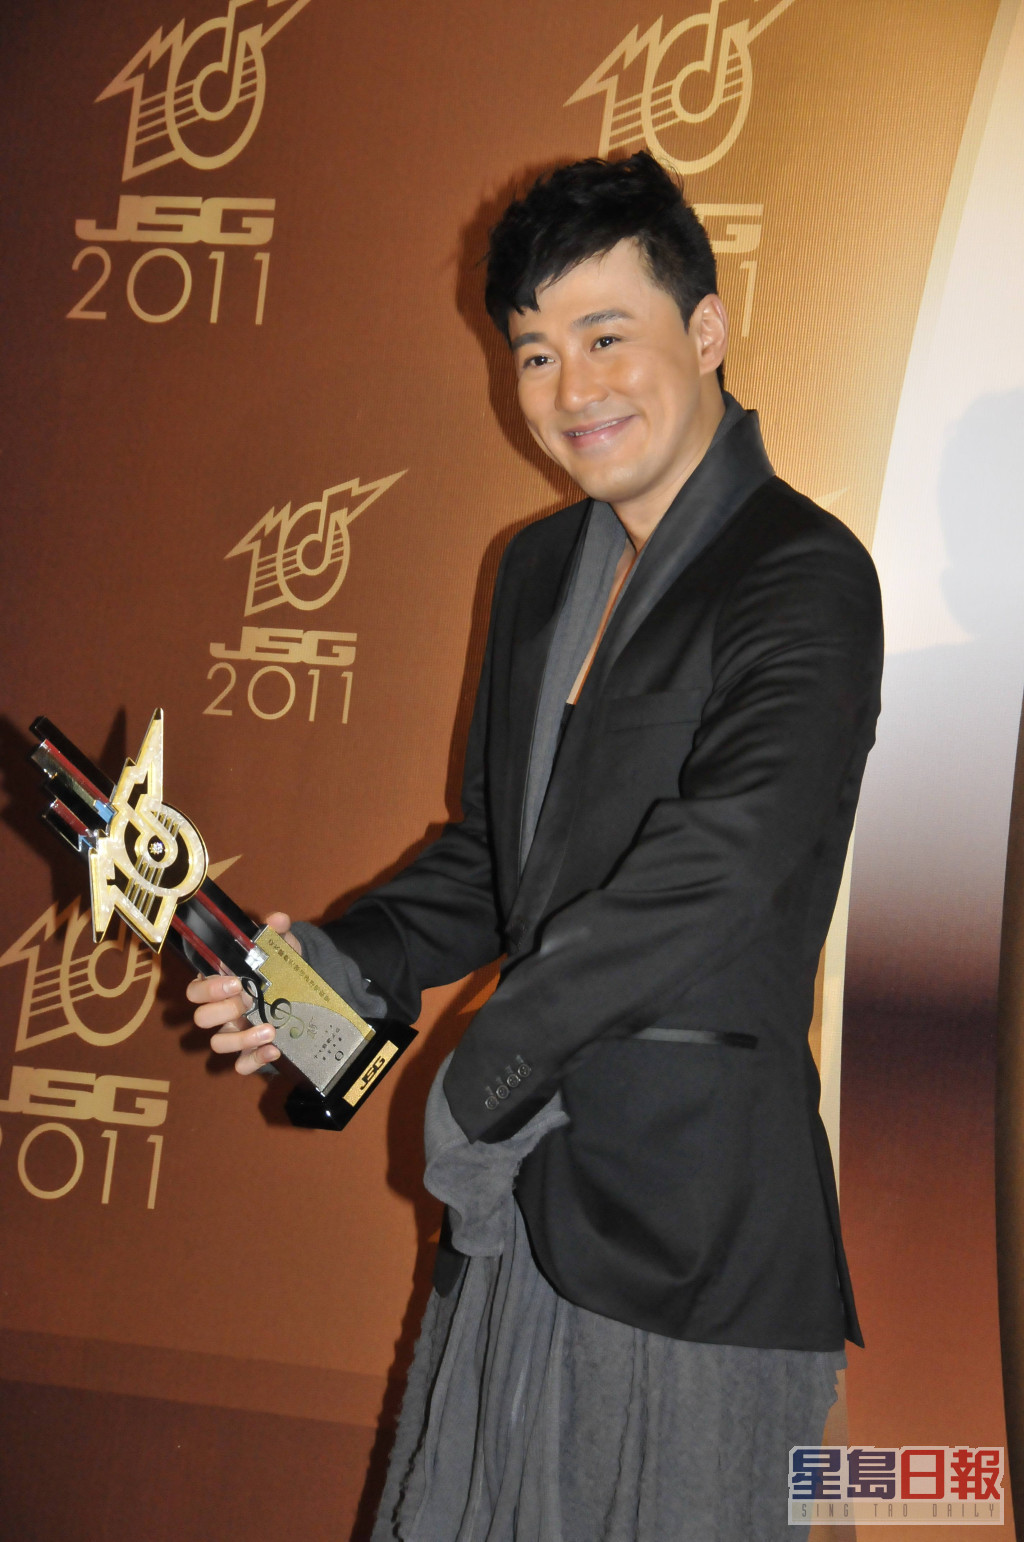 当年《Chok》更获得《十大劲歌金曲》的金曲金奖。